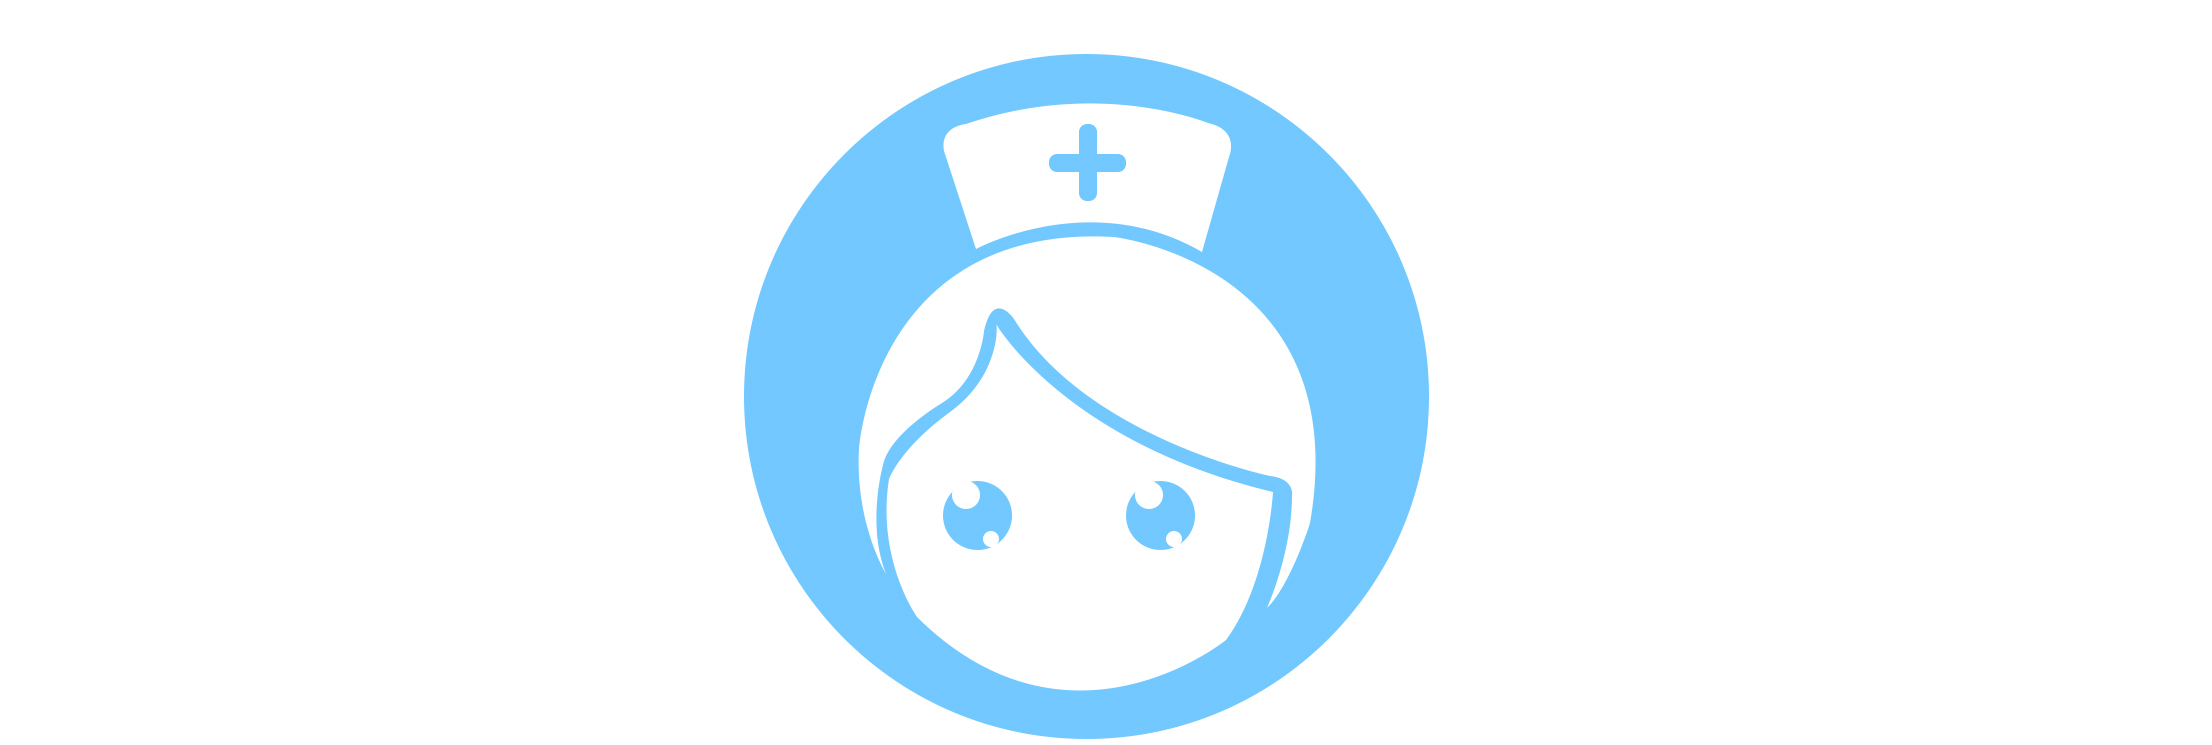 外科护理专科护士培训基地的logo